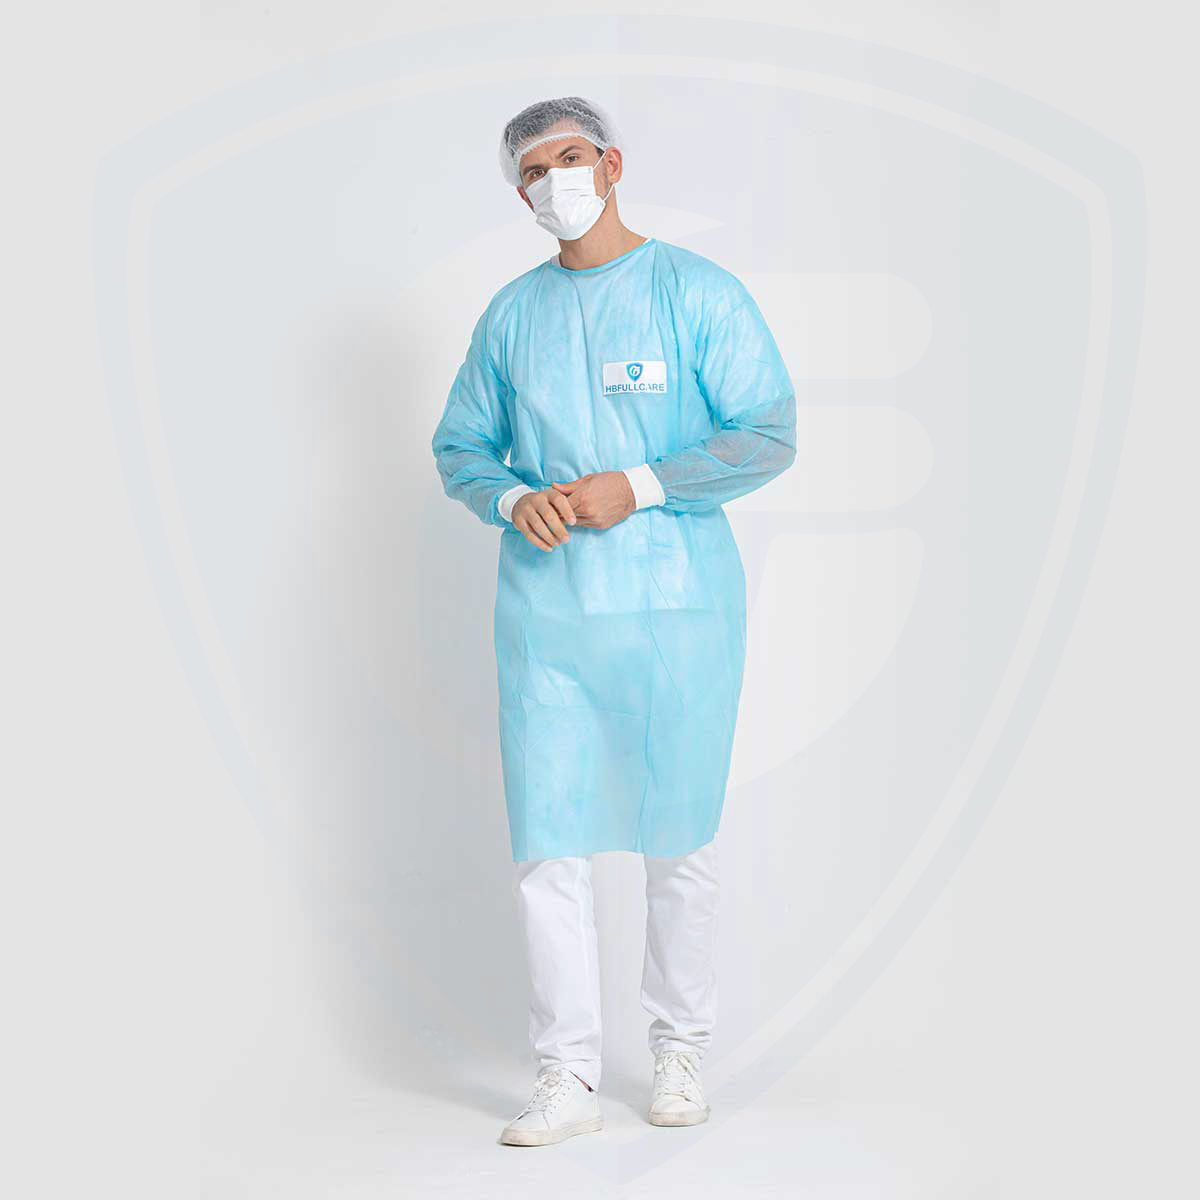 Camice chirurgico monouso in polipropilene blu da 25 g/mq con polsino in maglia